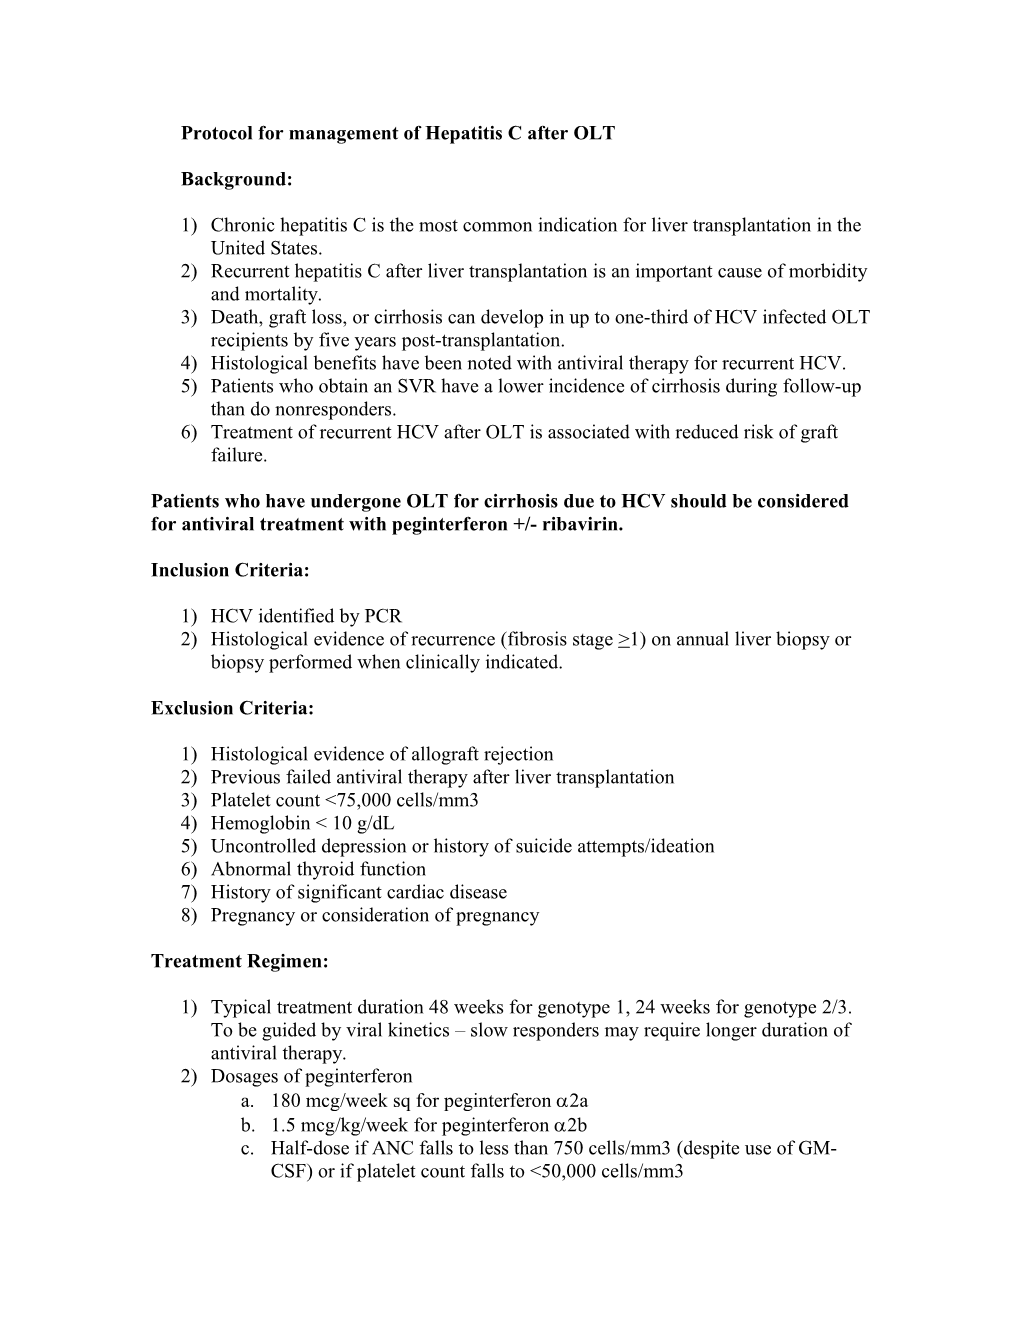 Protocol for Management of Hepatitis C After OLT